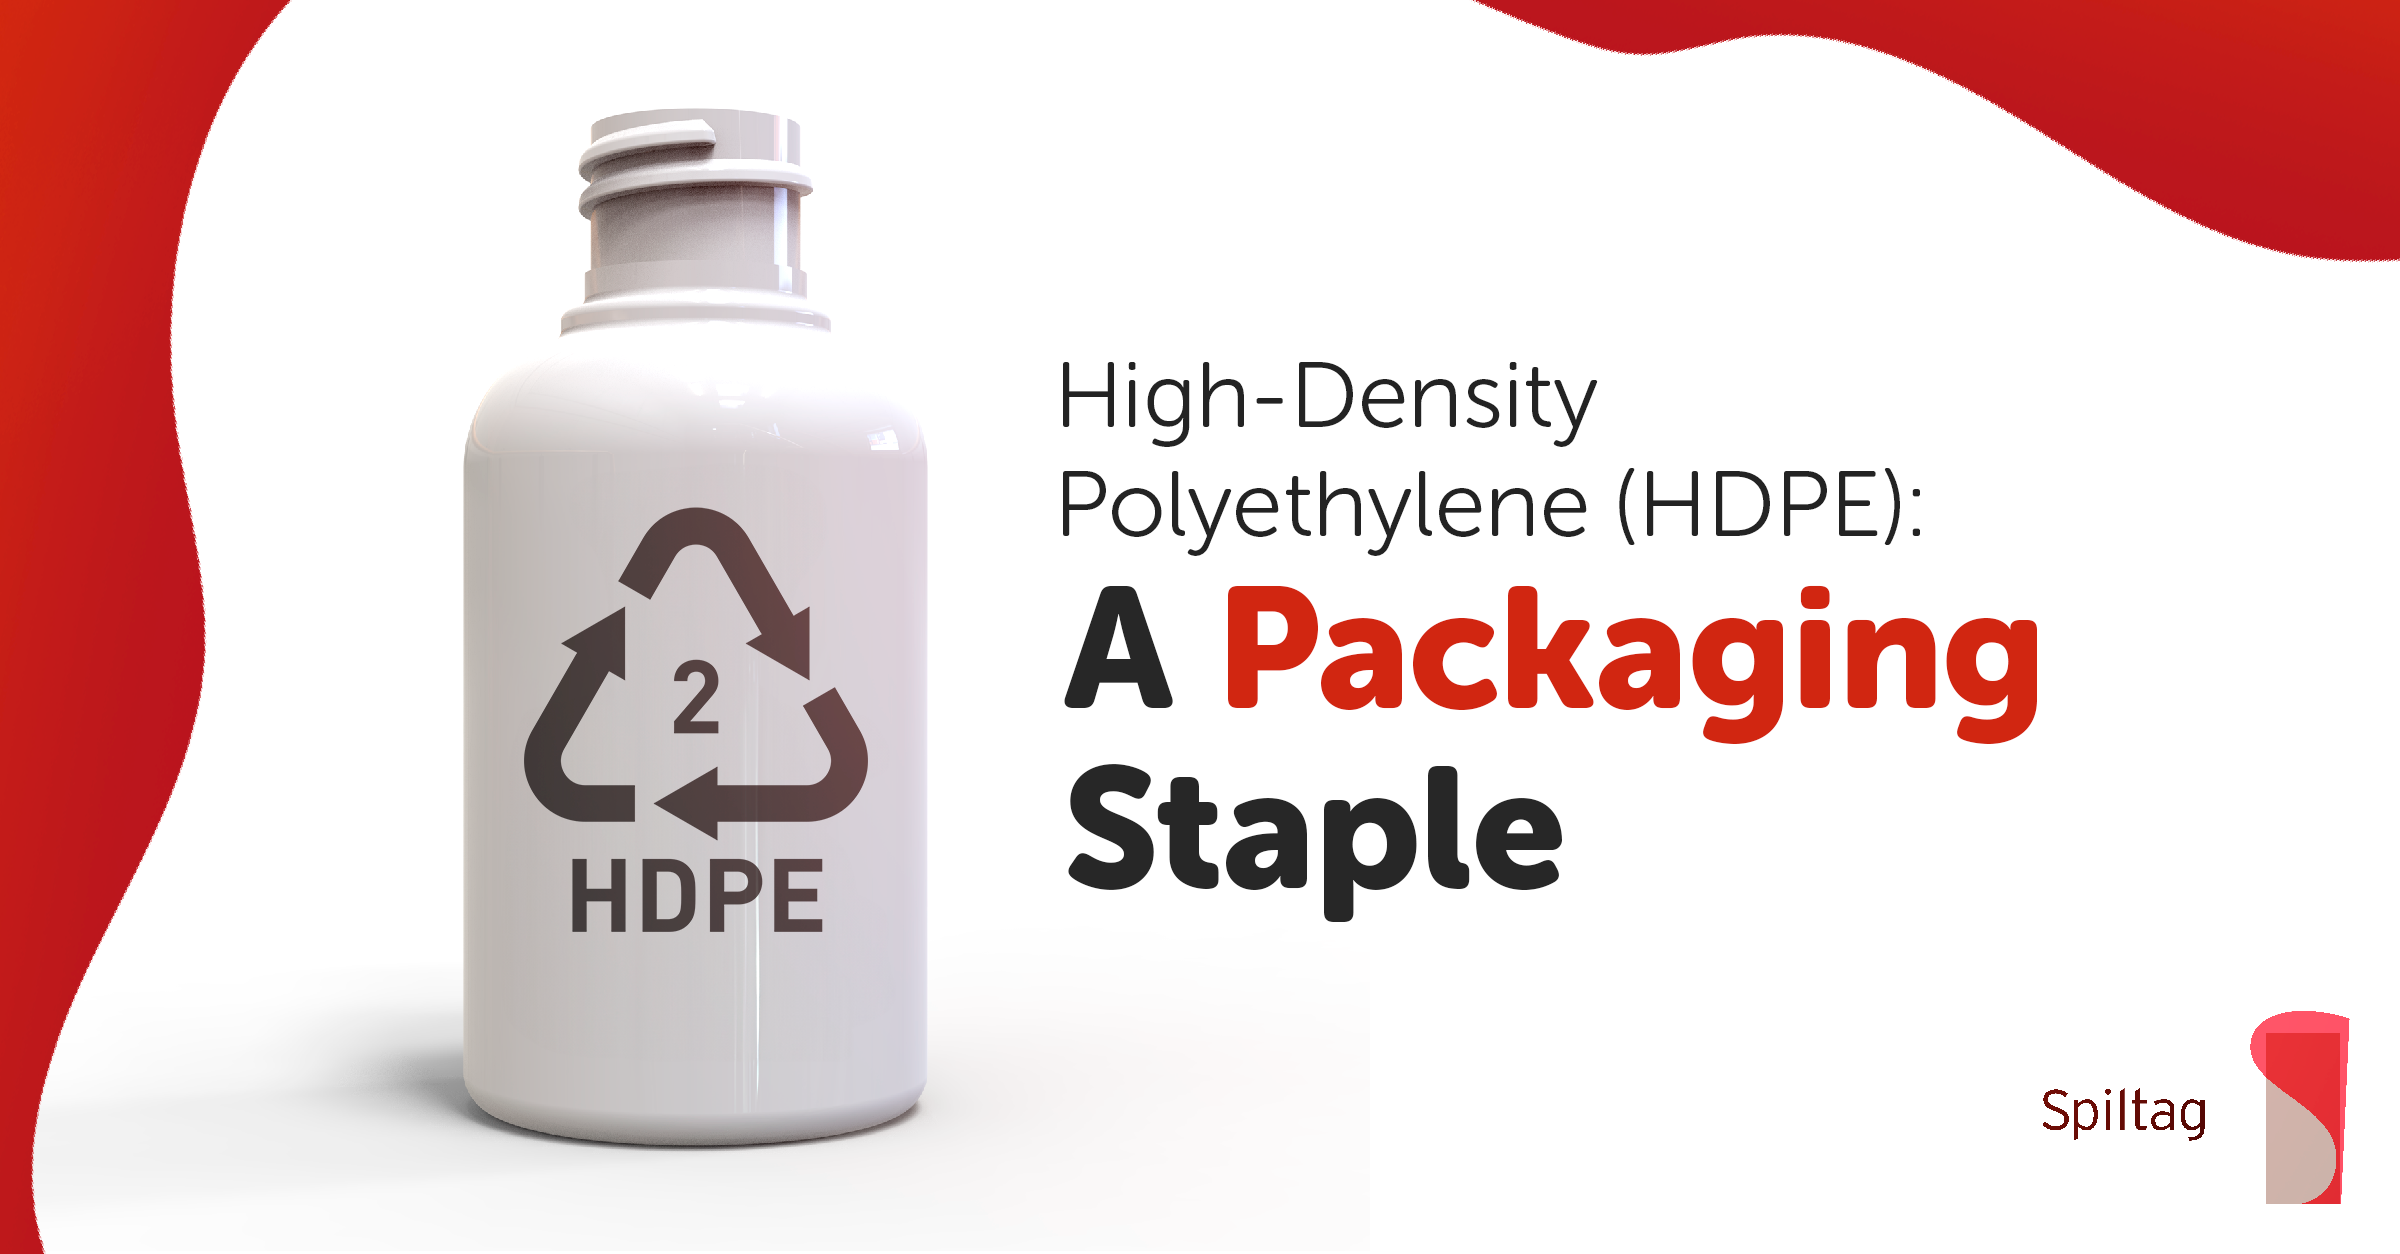 What is High Density Polyethylene (HDPE)?